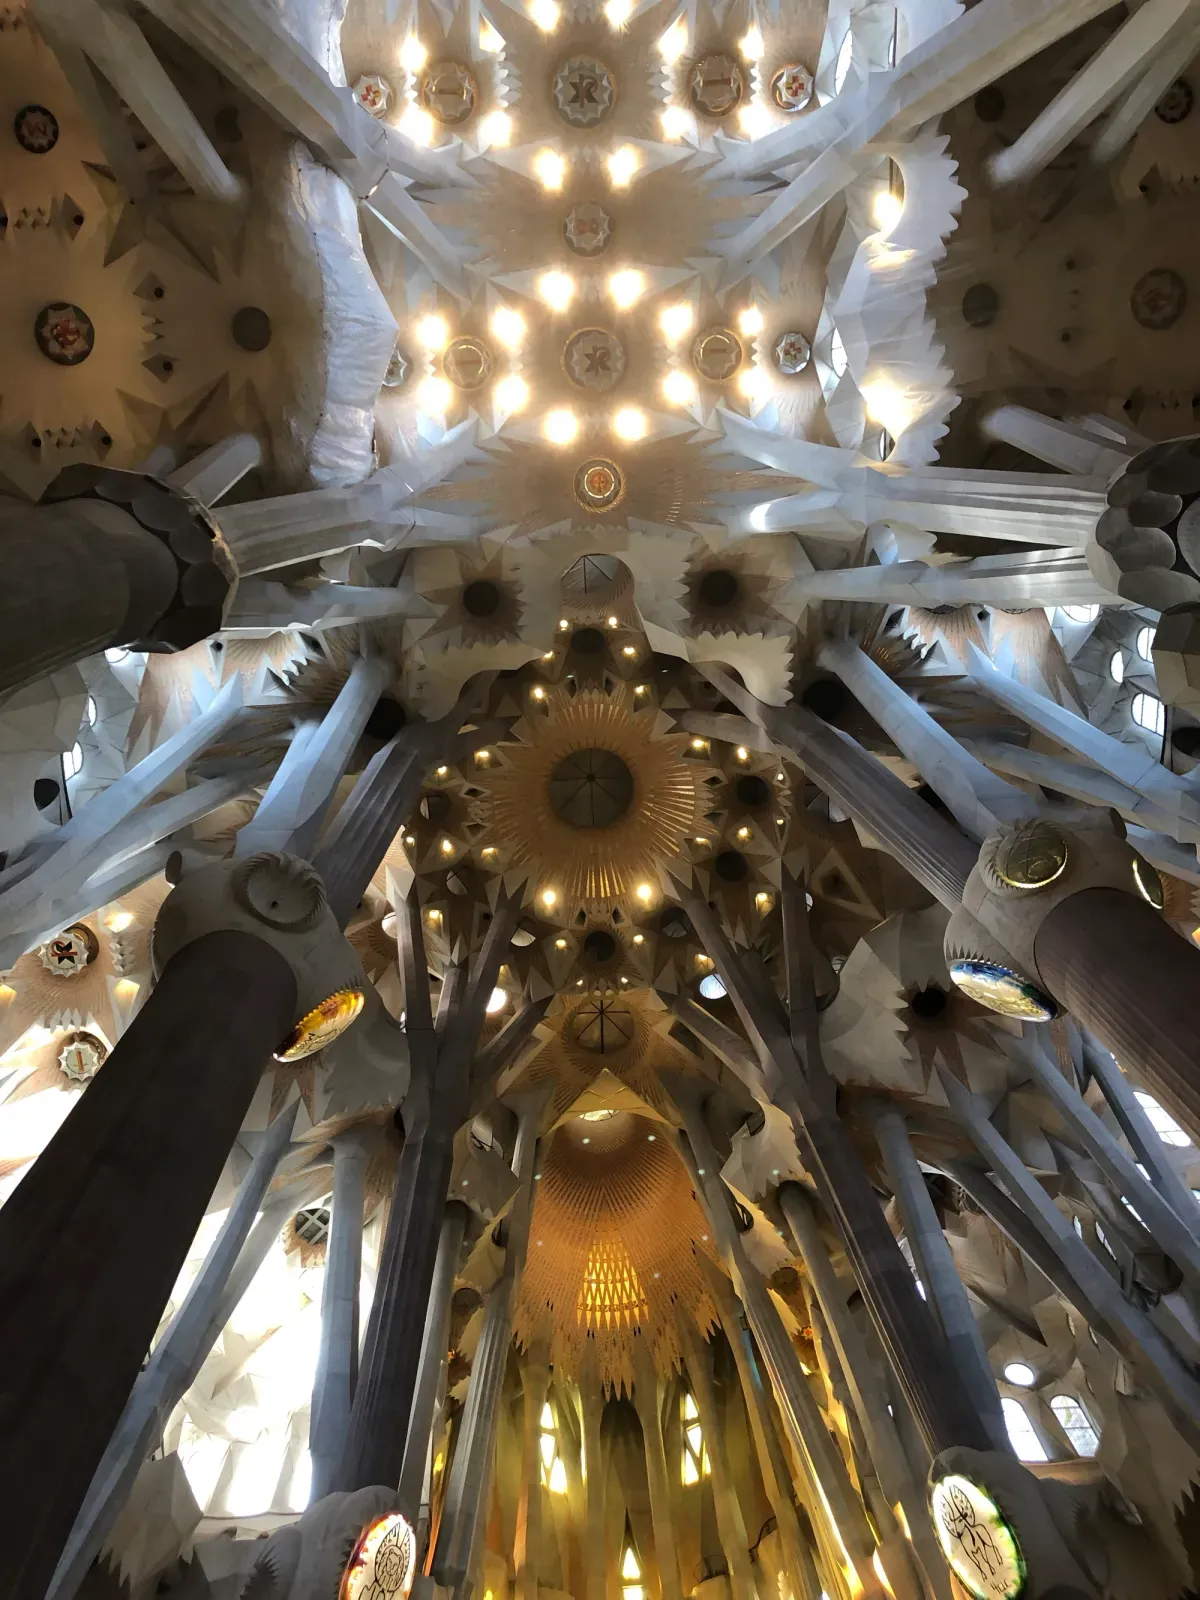 Interior vaulted ceiling of La Sagrada Familia.